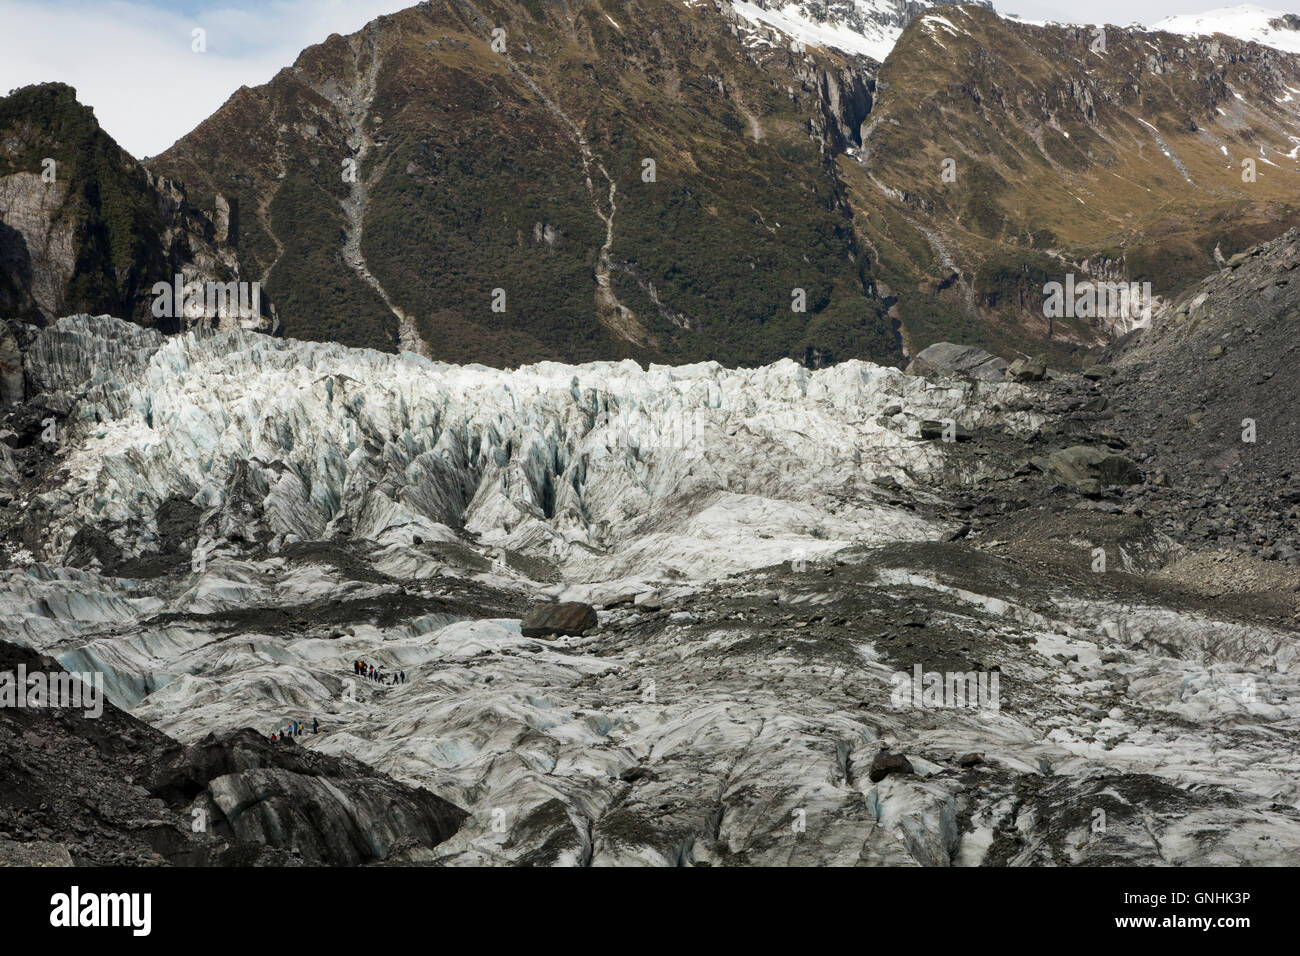 Sulla parte superiore del ghiacciaio Fox nelle Alpi del Sud della Nuova Zelanda sono turistiche guidate in itinerari spettacolari. Foto Stock